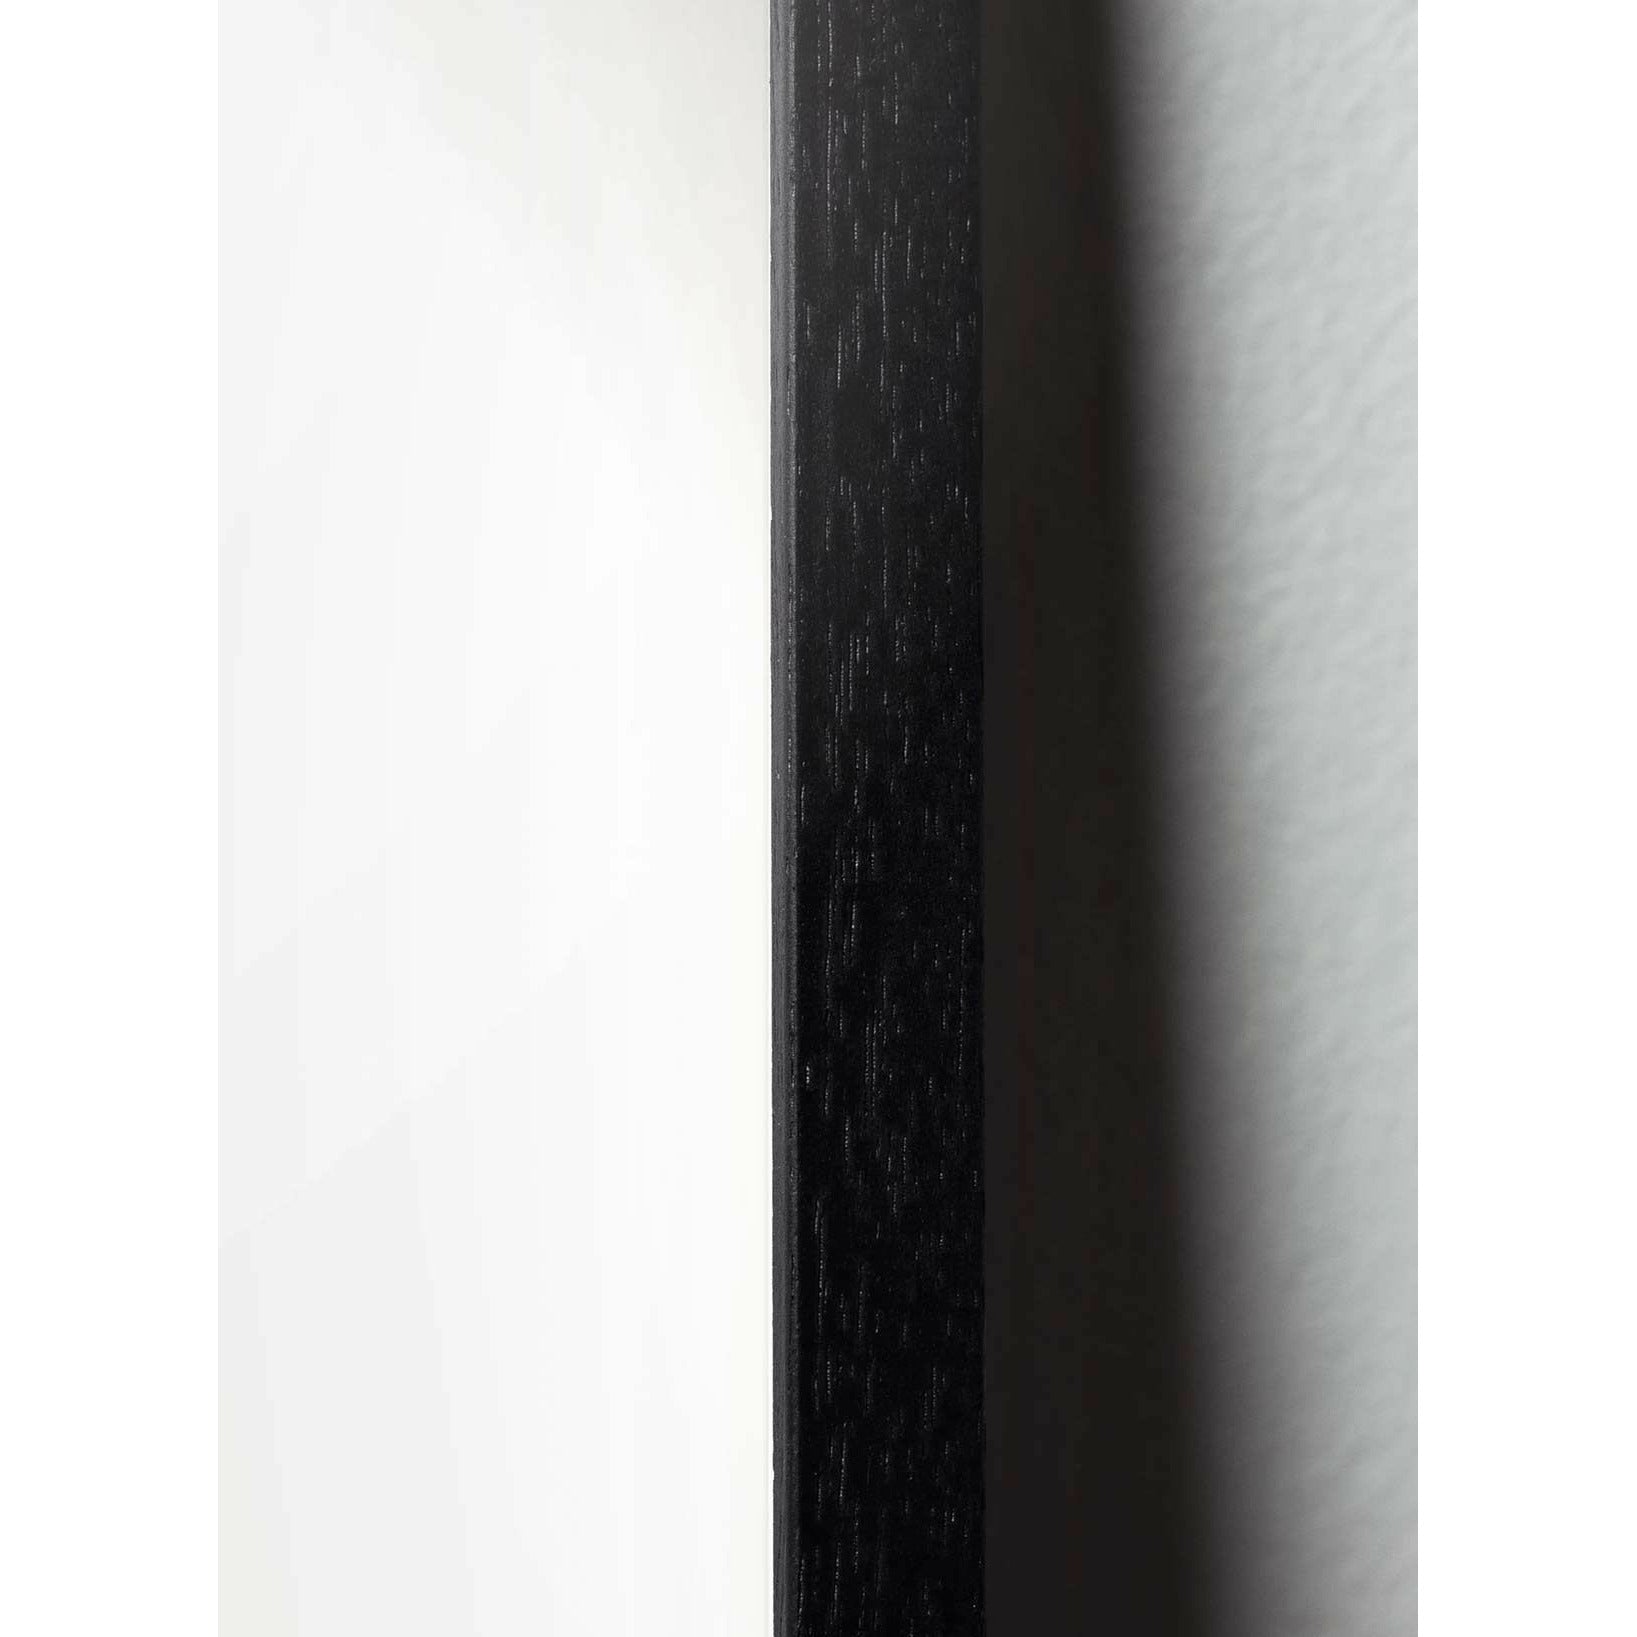 Brainchild Schwanenparade Poster, Rahmen aus schwarz lackiertem Holz, 70x100 Cm